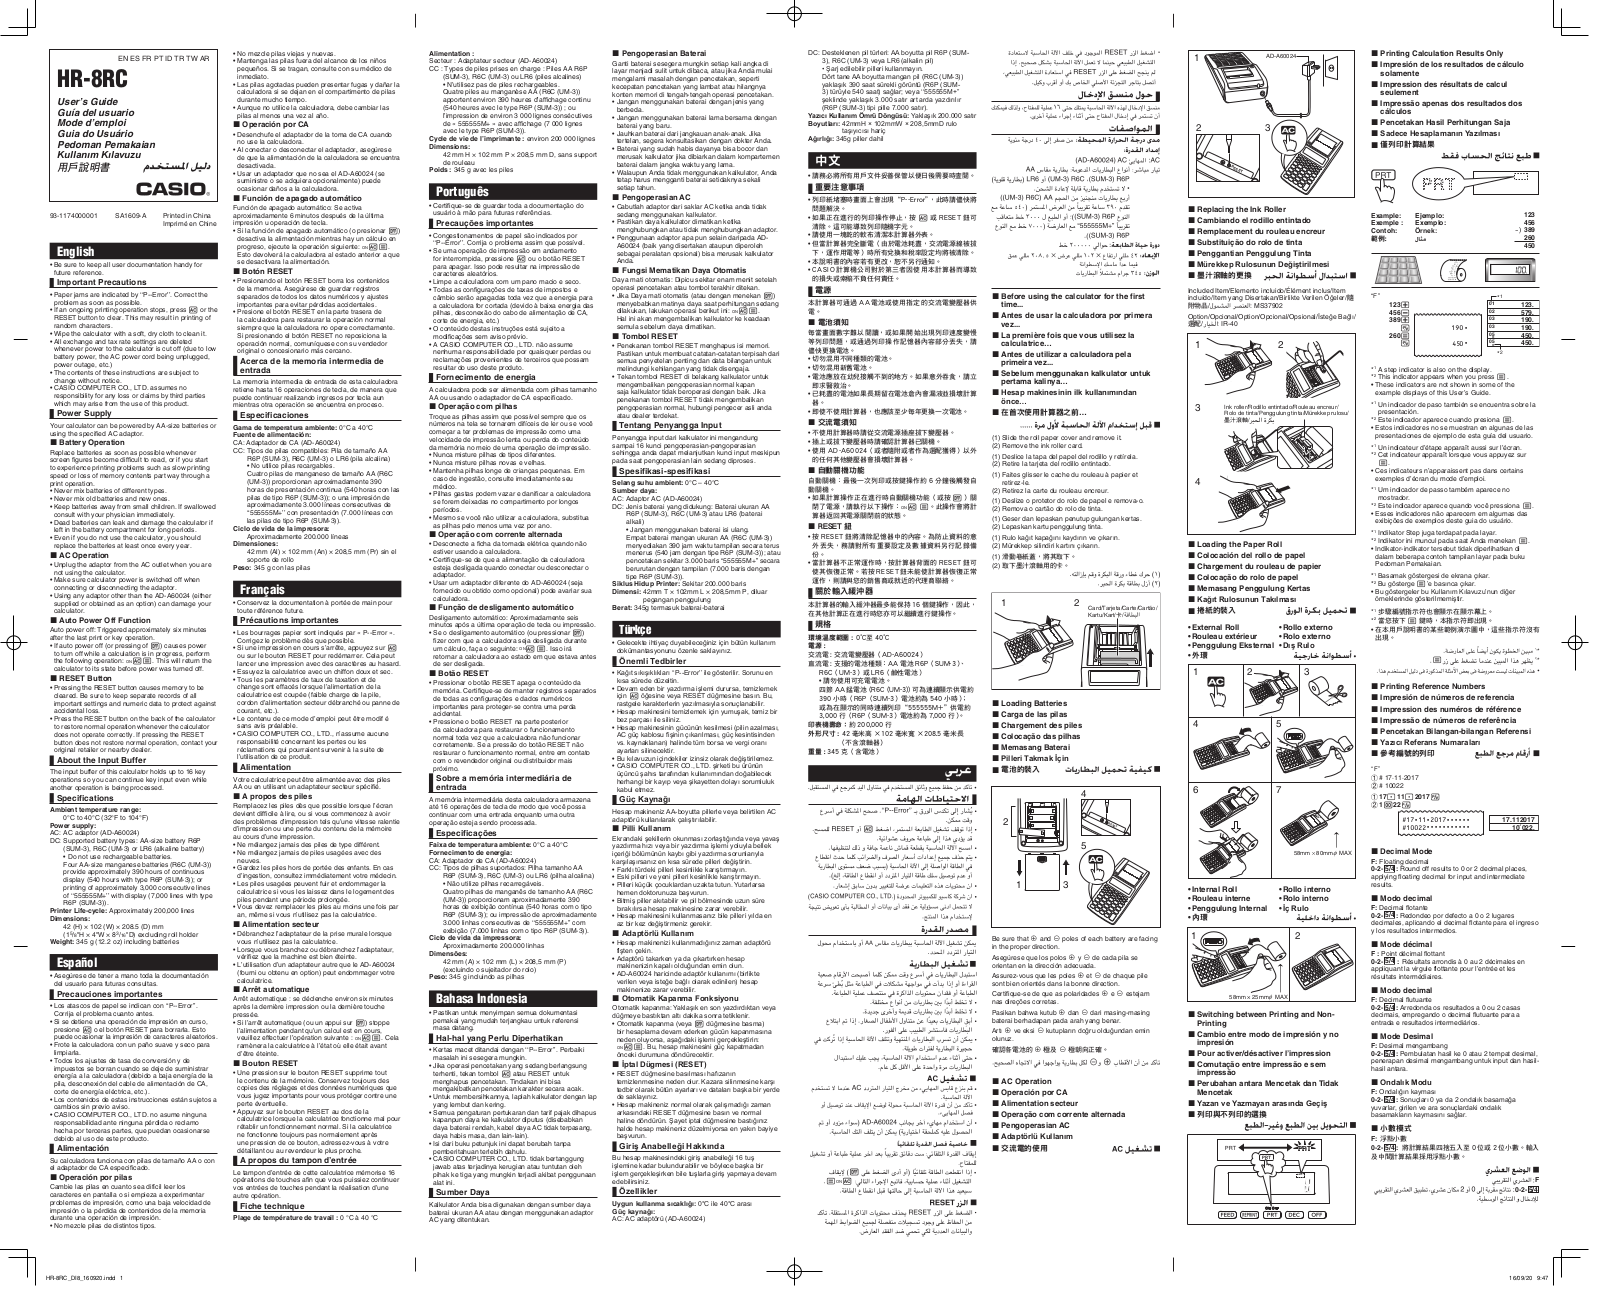 Casio HR-8RC User Manual